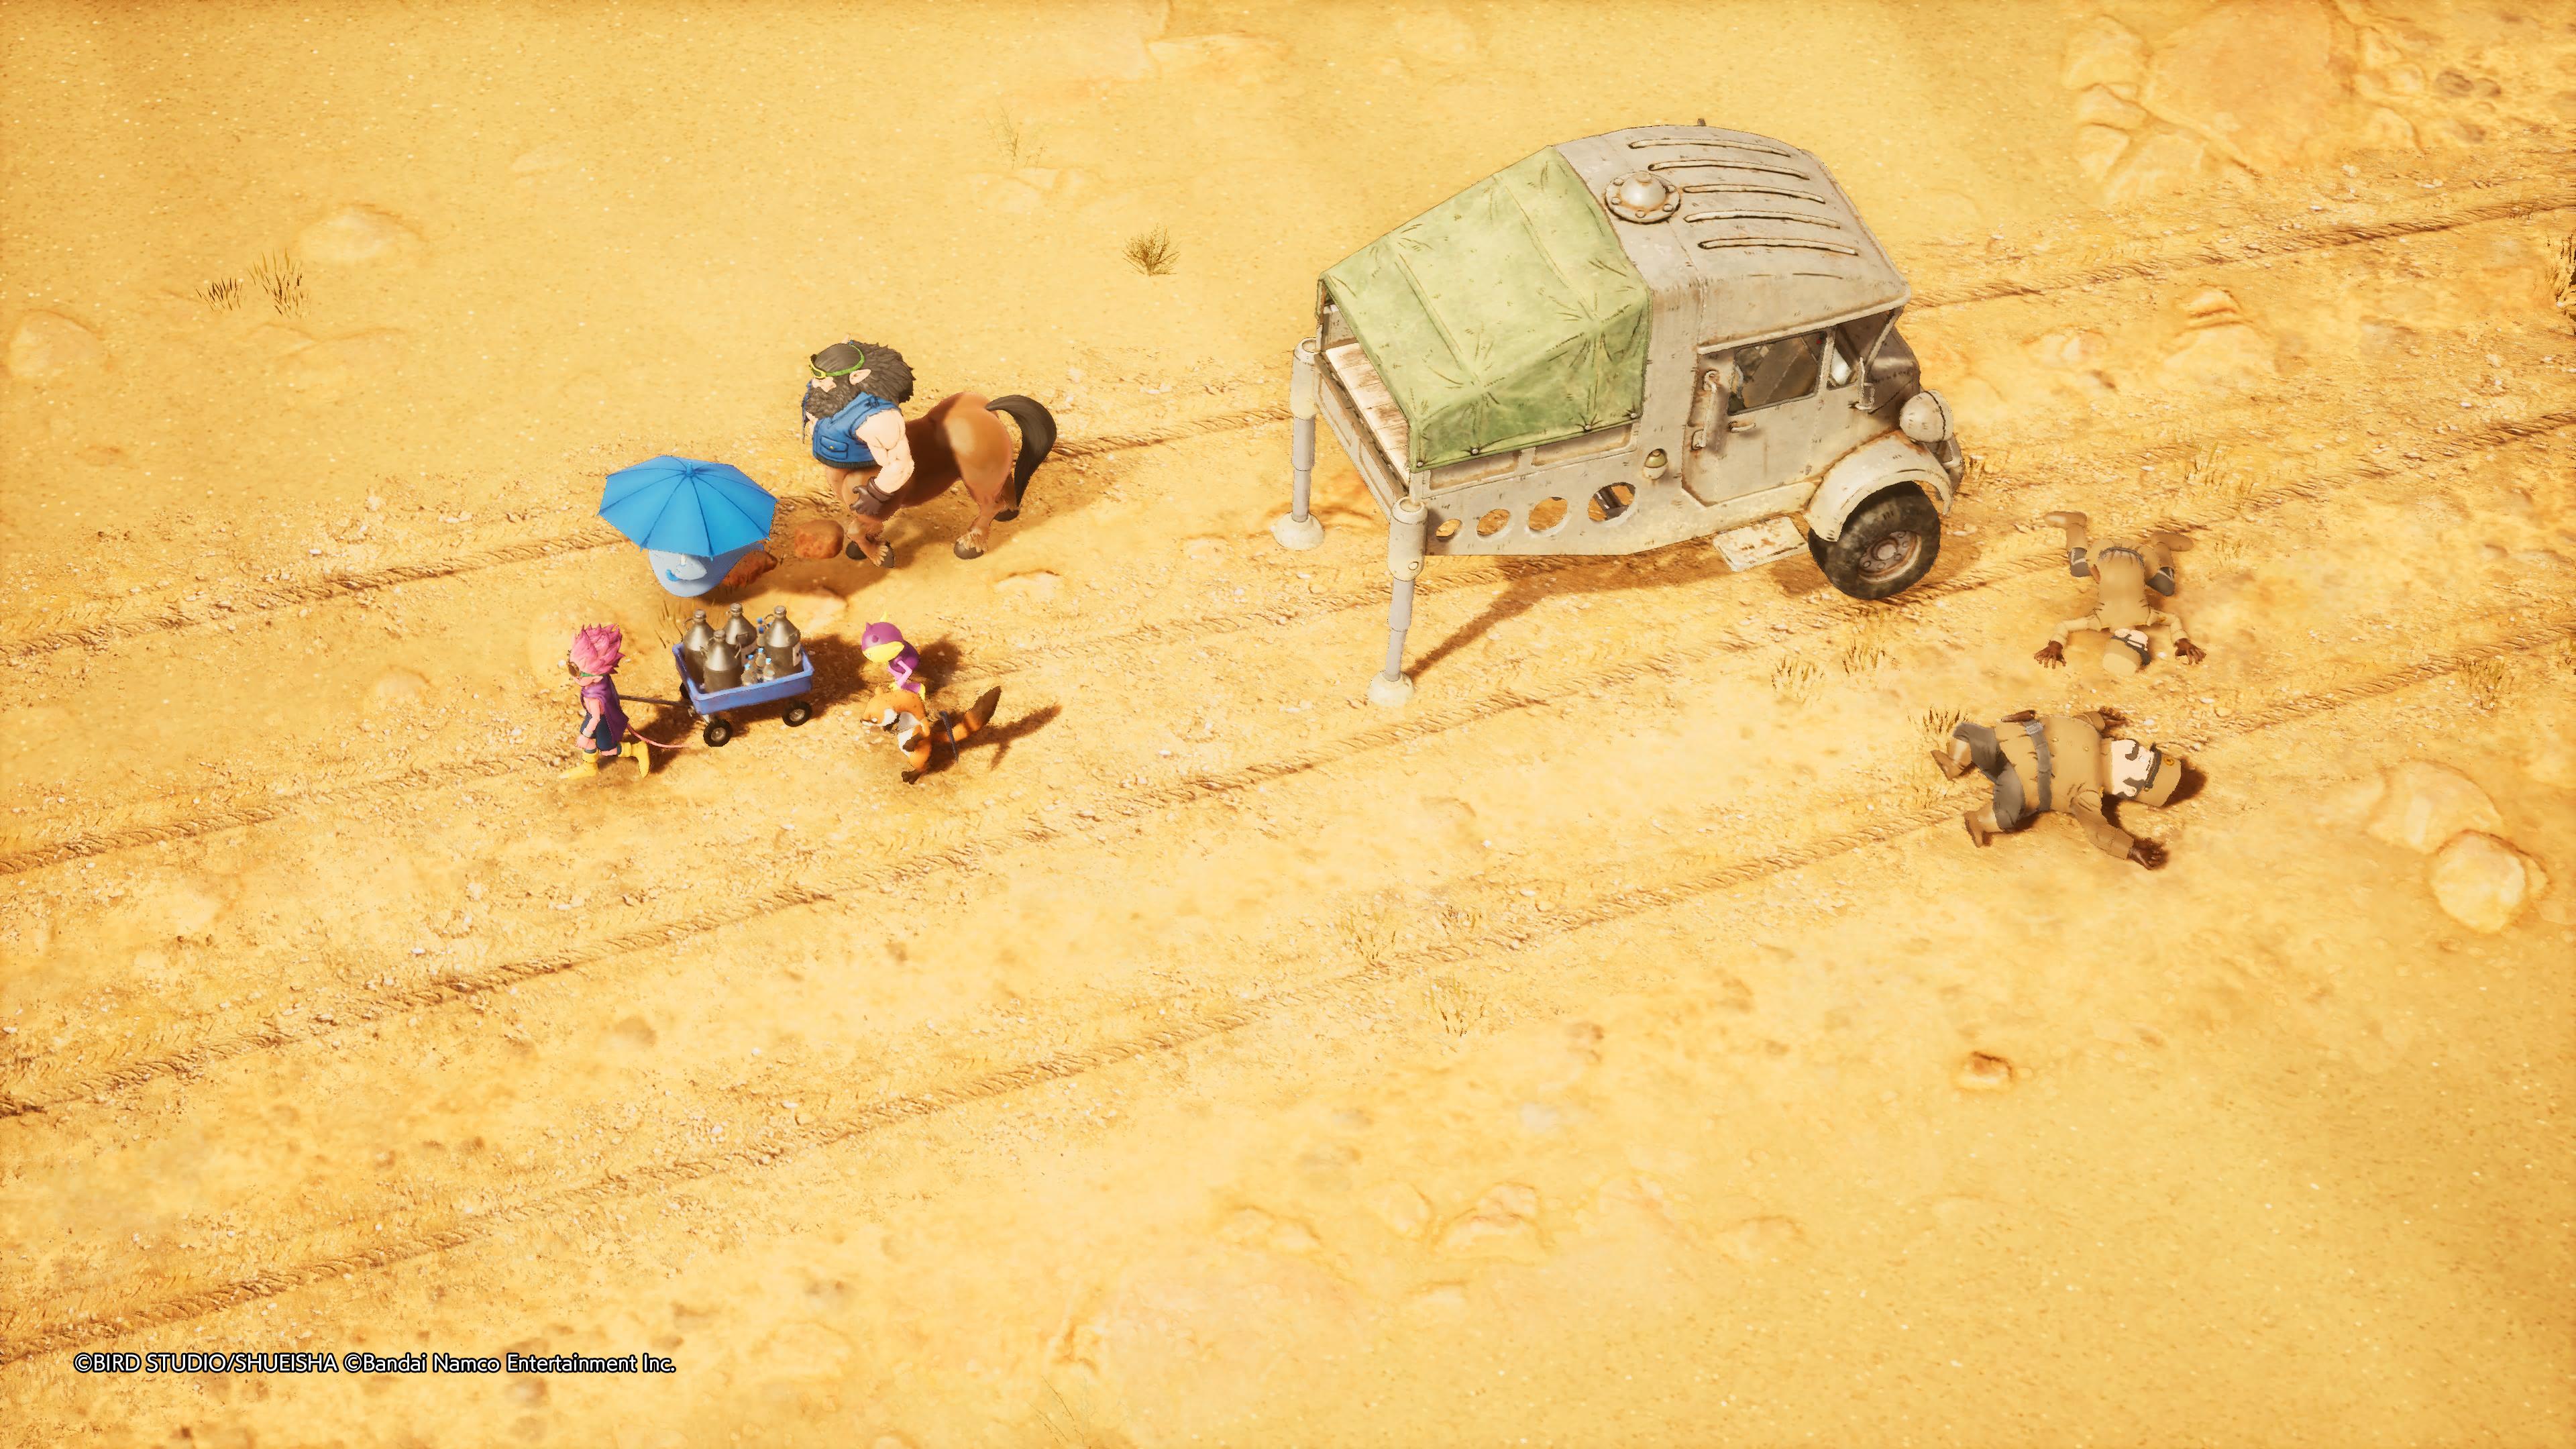 Reseña: Sand Land, una fiel adaptación de la obra de Akira Toriyama 32